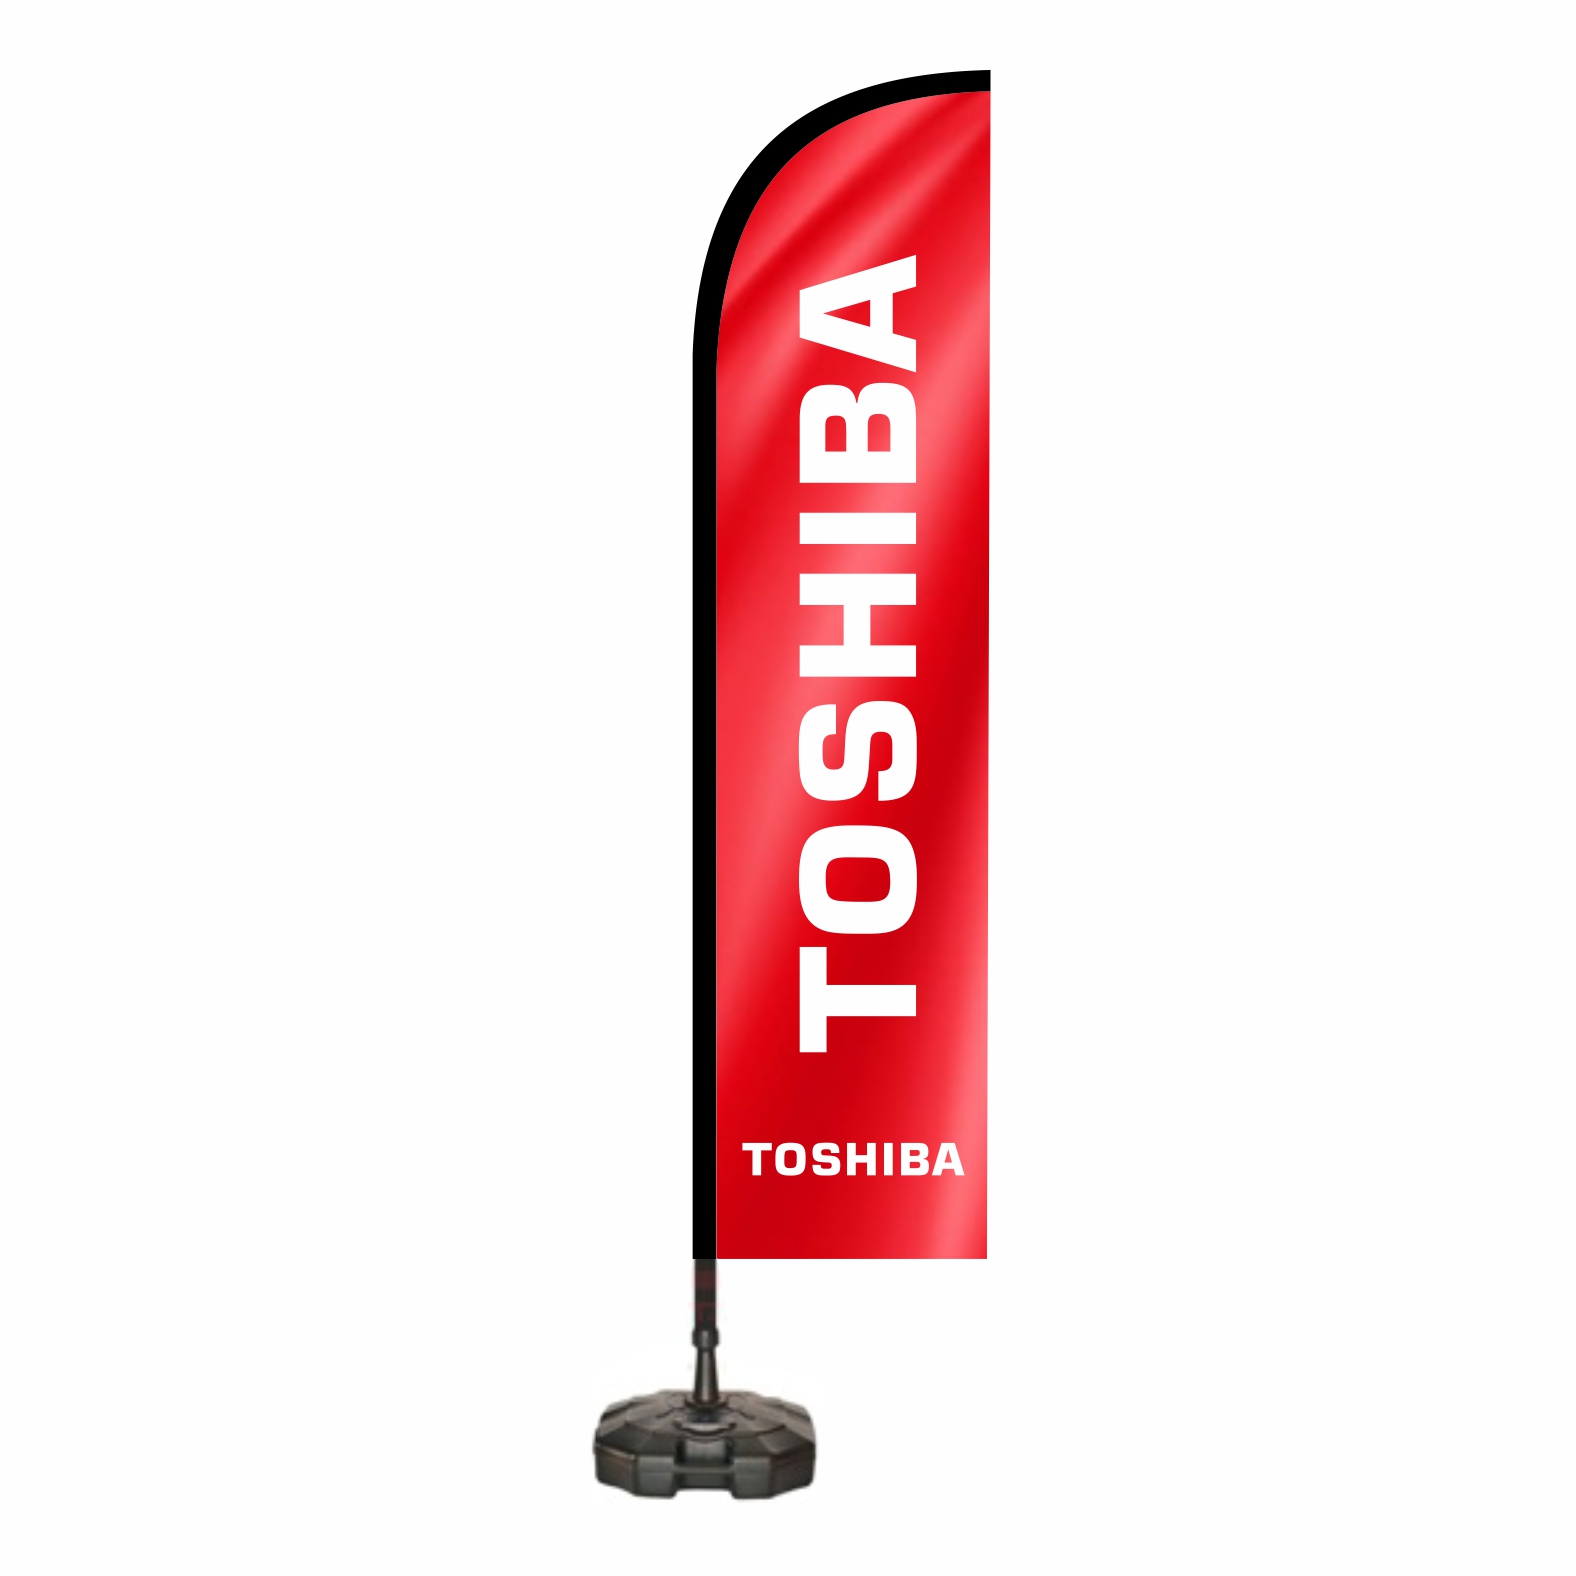 Toshiba Dubal Bayraklar